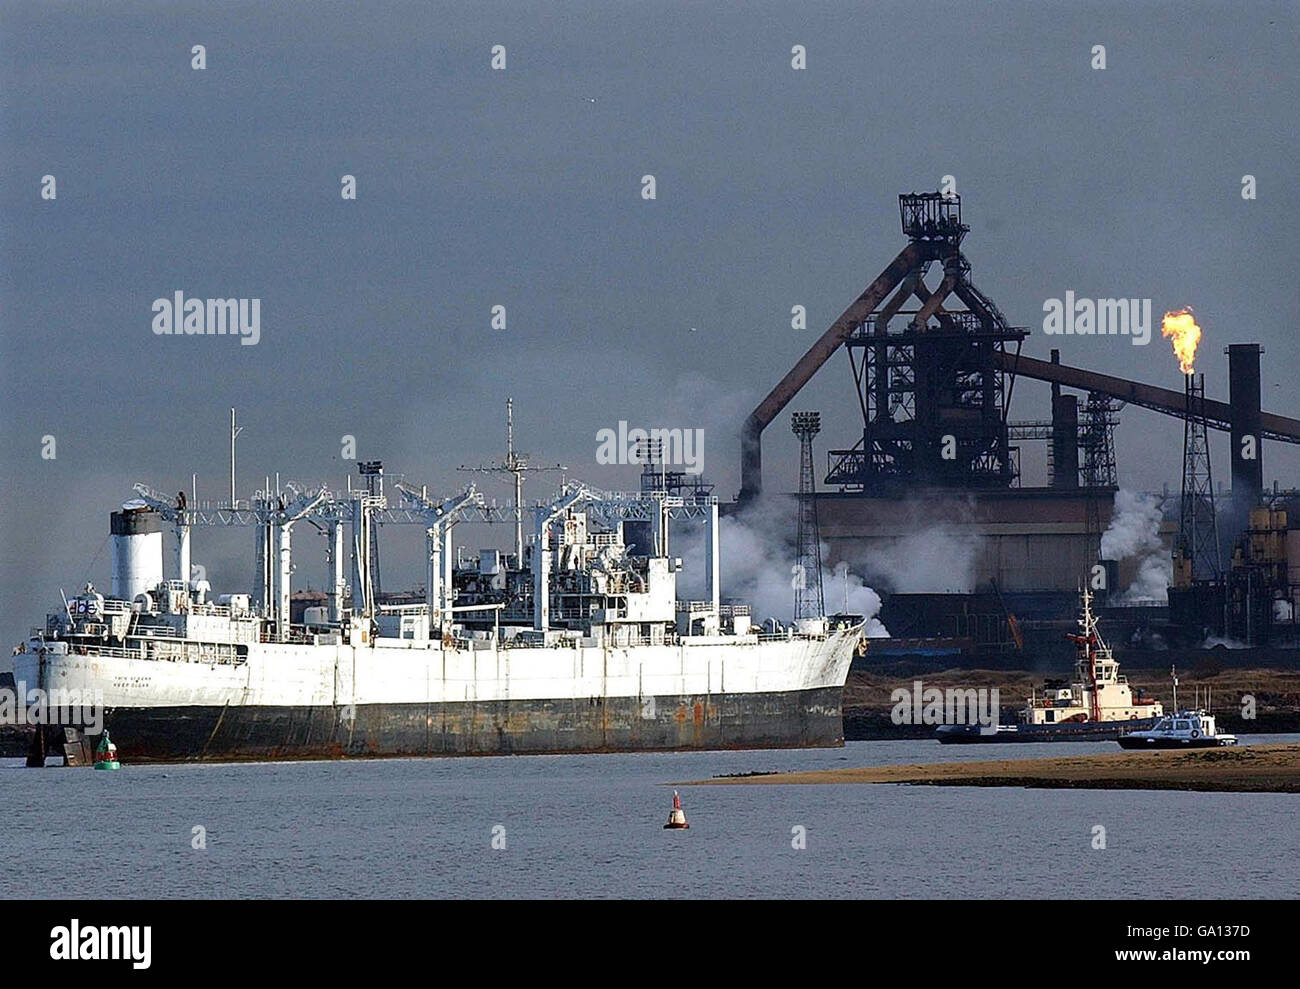 Bibliotheksdatei vom 13-11-2003. Das zweite Schiff in einer Flotte von umstrittenen ehemaligen US Navy 'Geisterschiffen' kommt auf einer Hartlepool Breakers' Werft an. Stockfoto